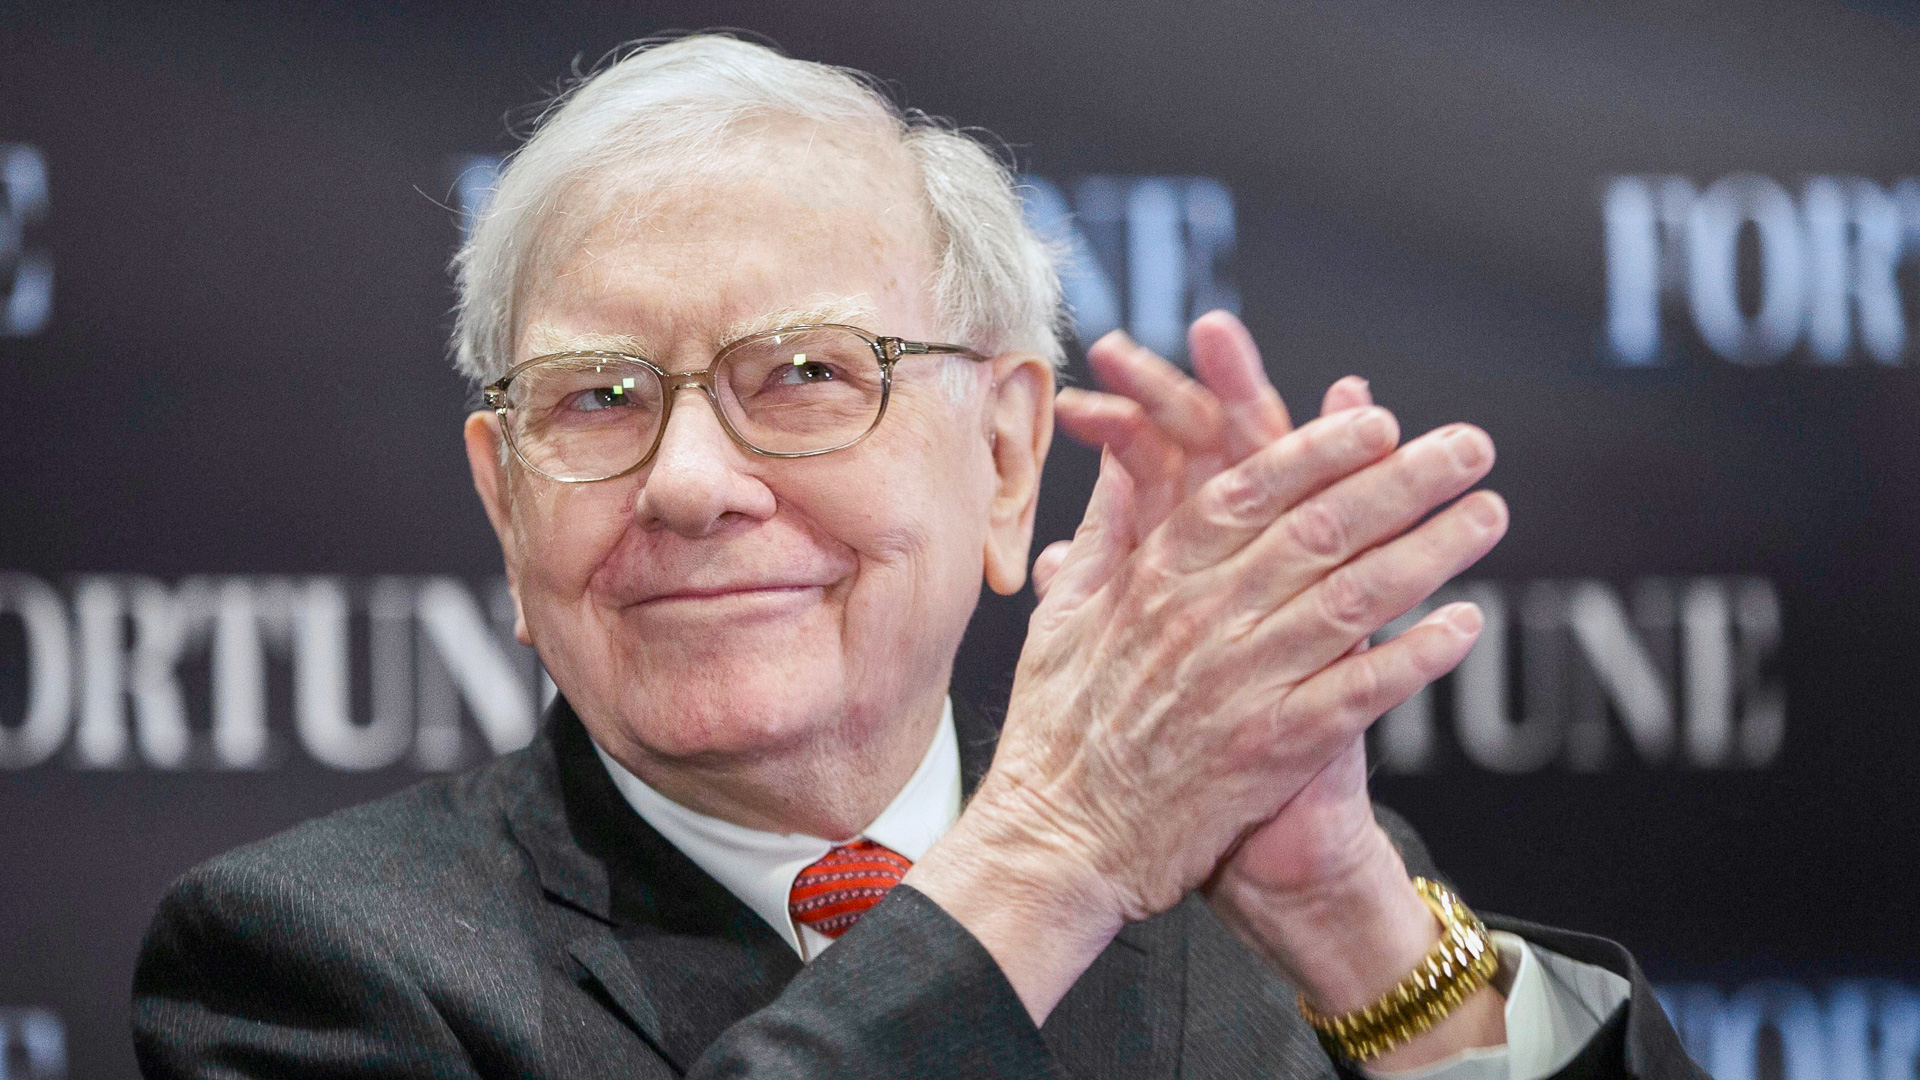 Warren-Buffett-claps-his-hands-during-interview-shutterstock_editorial_6209326b_huge.jpg